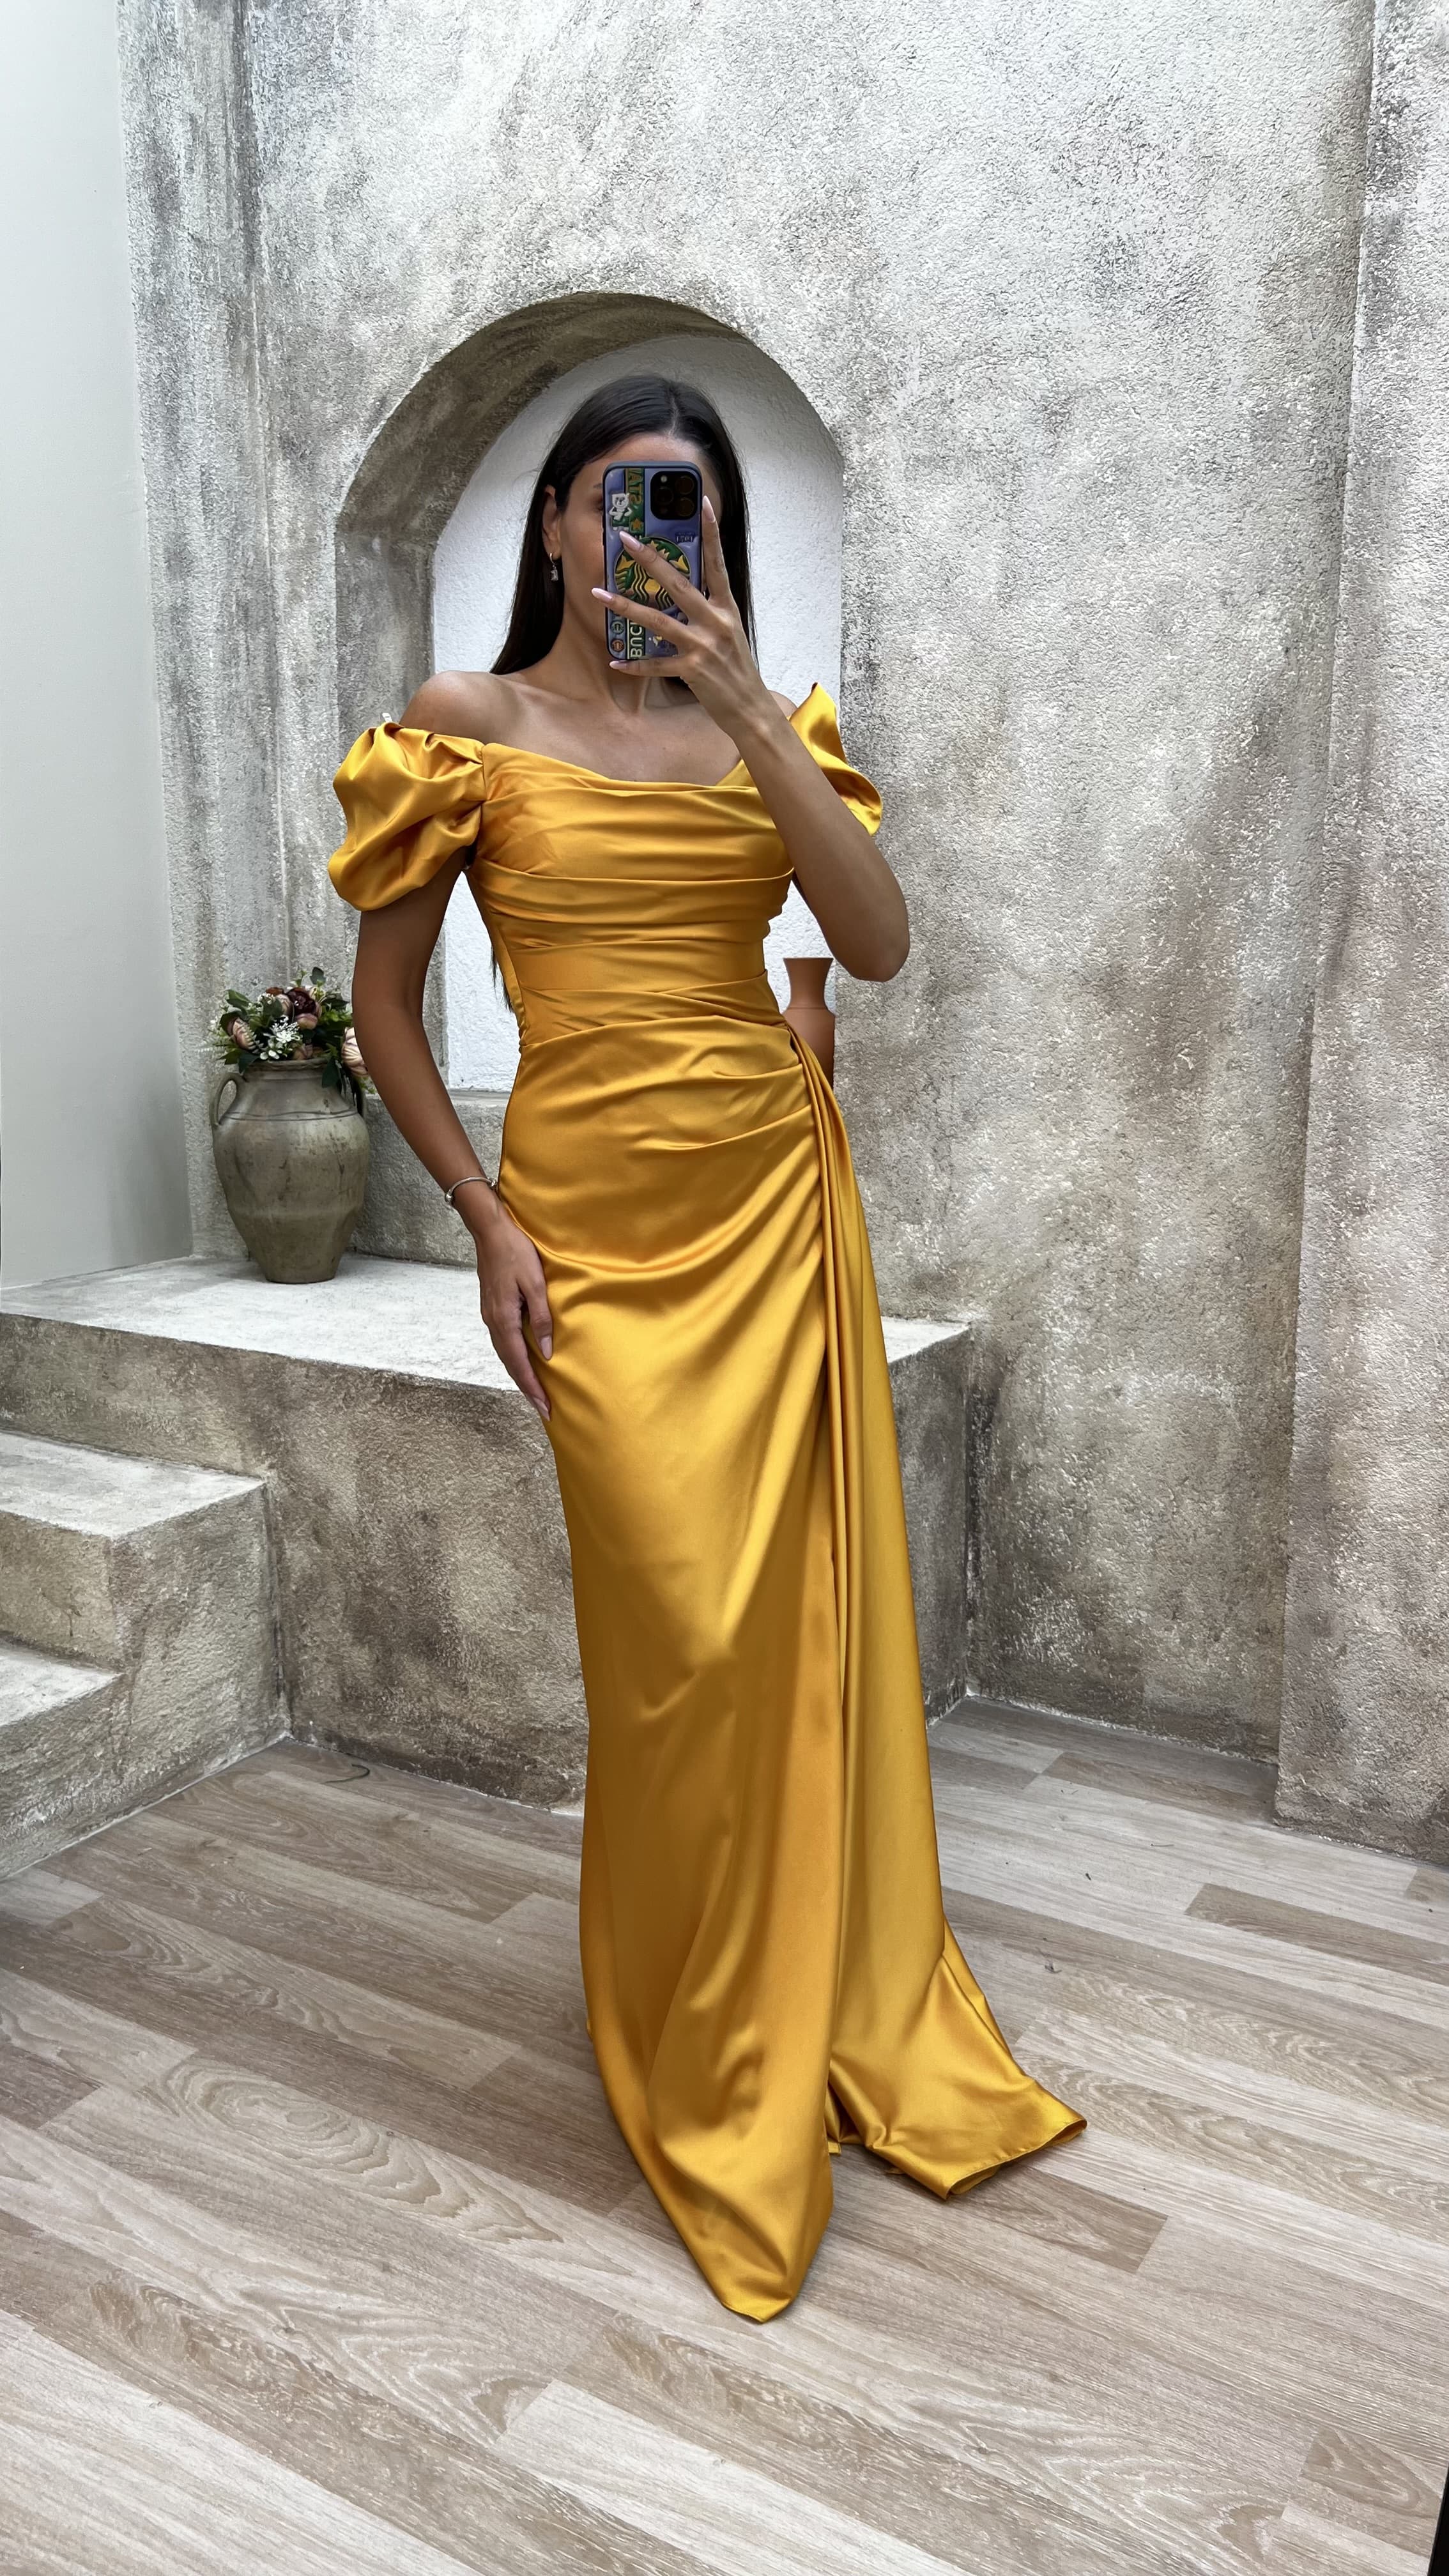 Altın Gold Straplez Sırt Ve Omuz Detay Drapeli Abiye Elbise | Kıyafet ...